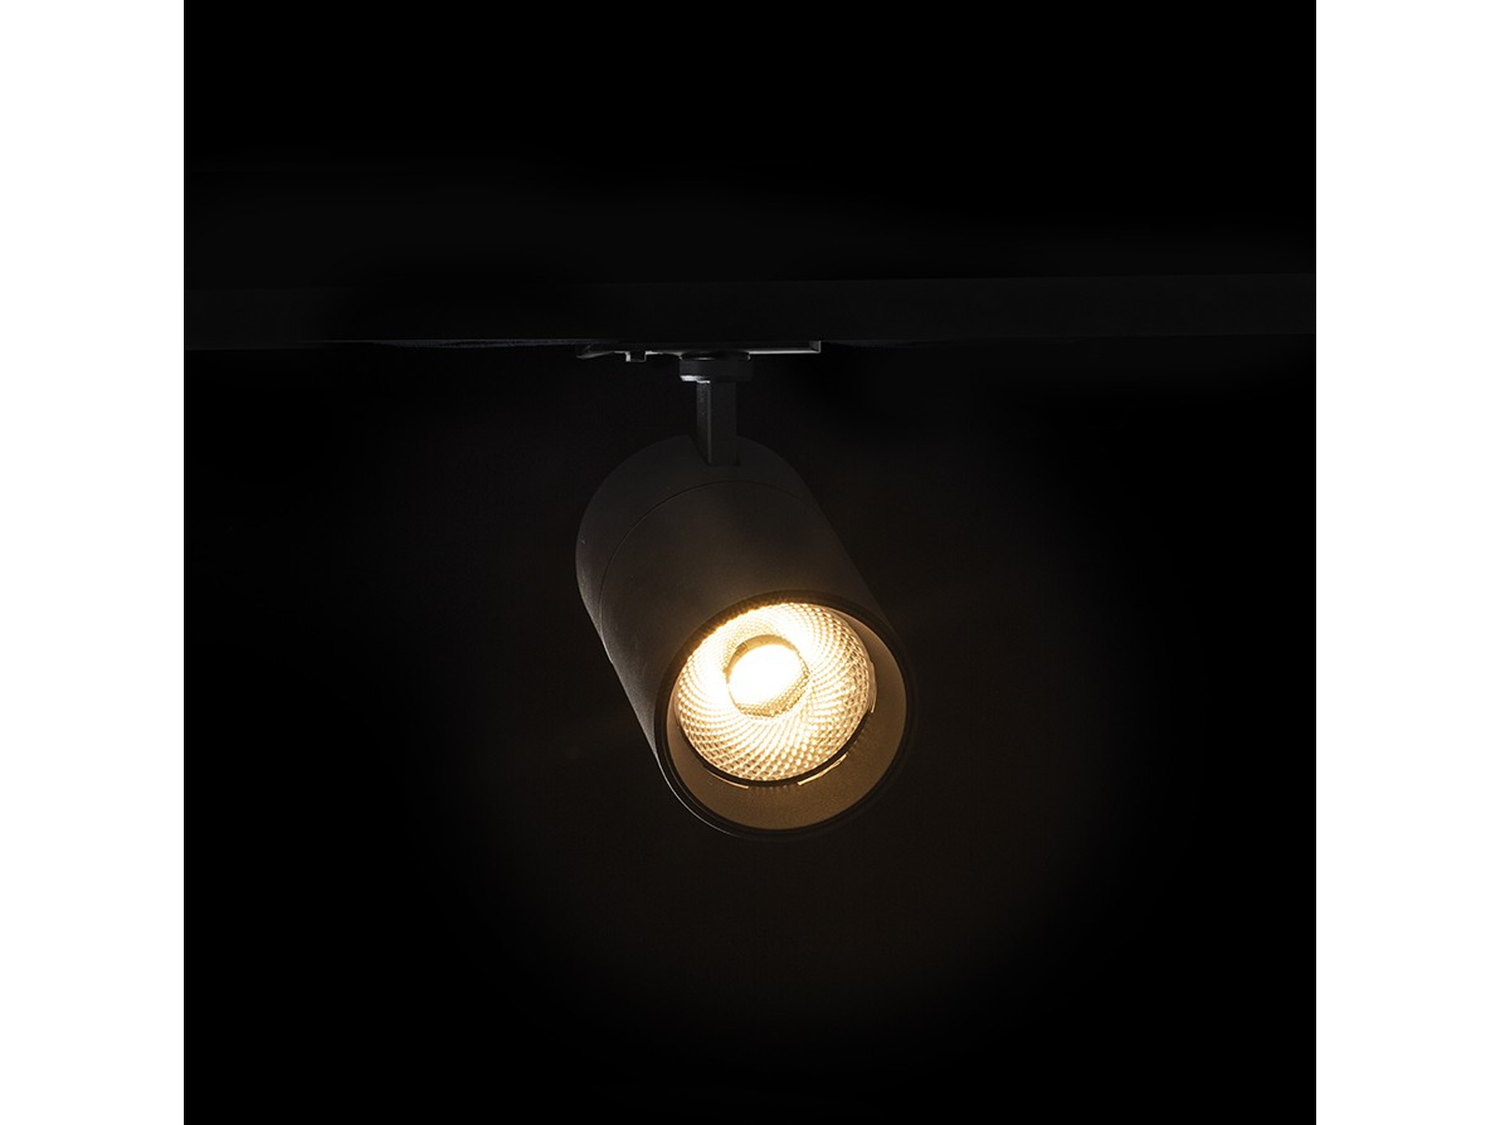 Stropní LED reflektor WISH 20 DIMM pro jednookruhovou lištu, černý, 230V, 20W, 36°, 3000K, 4000K, 5000K, 17cm